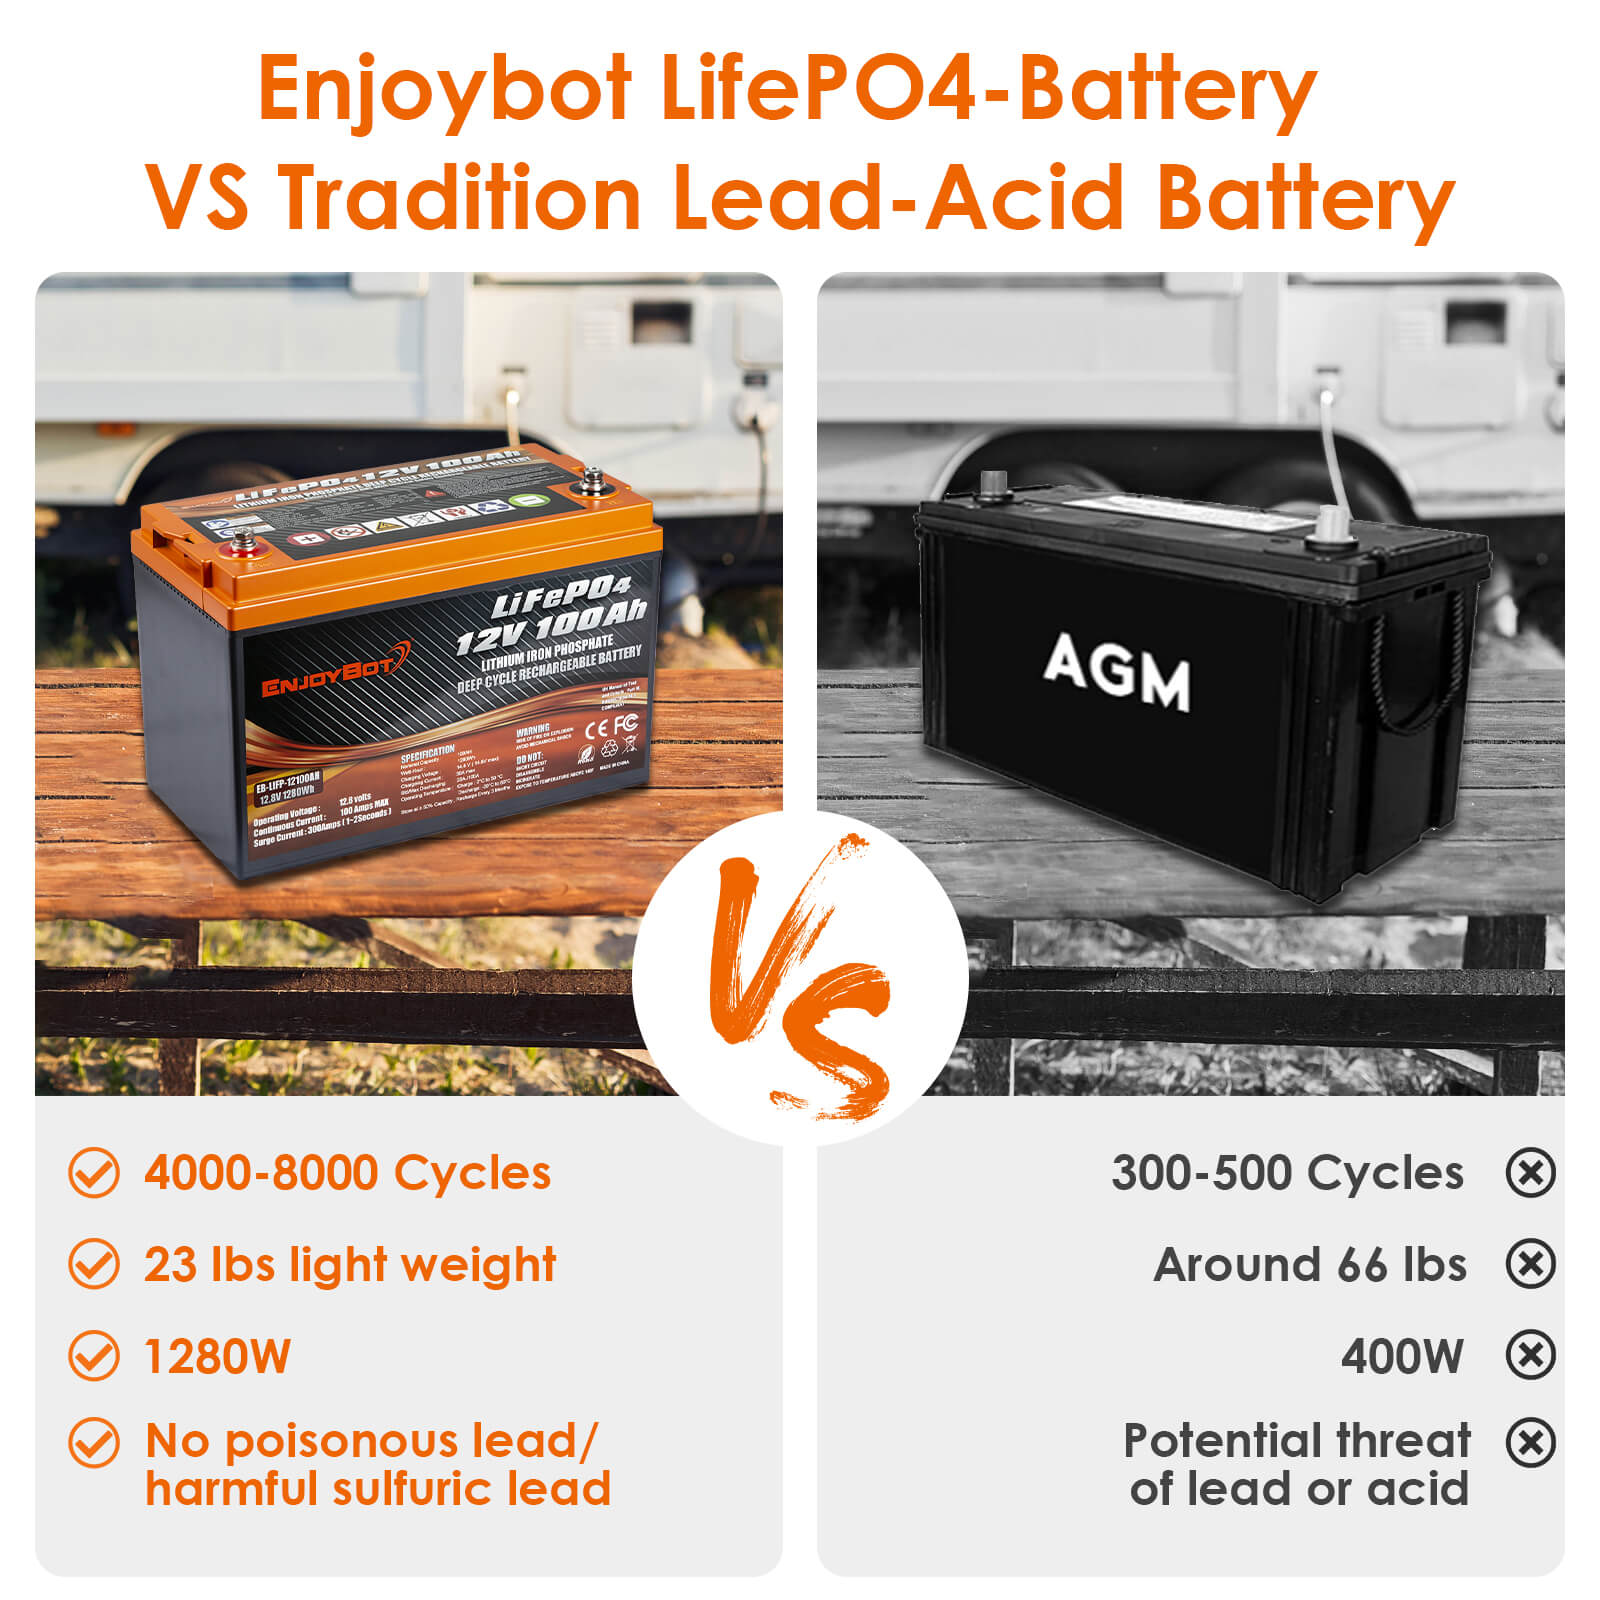 Enjoybot 12v 100ah LiFePO4 Battery - Advantage